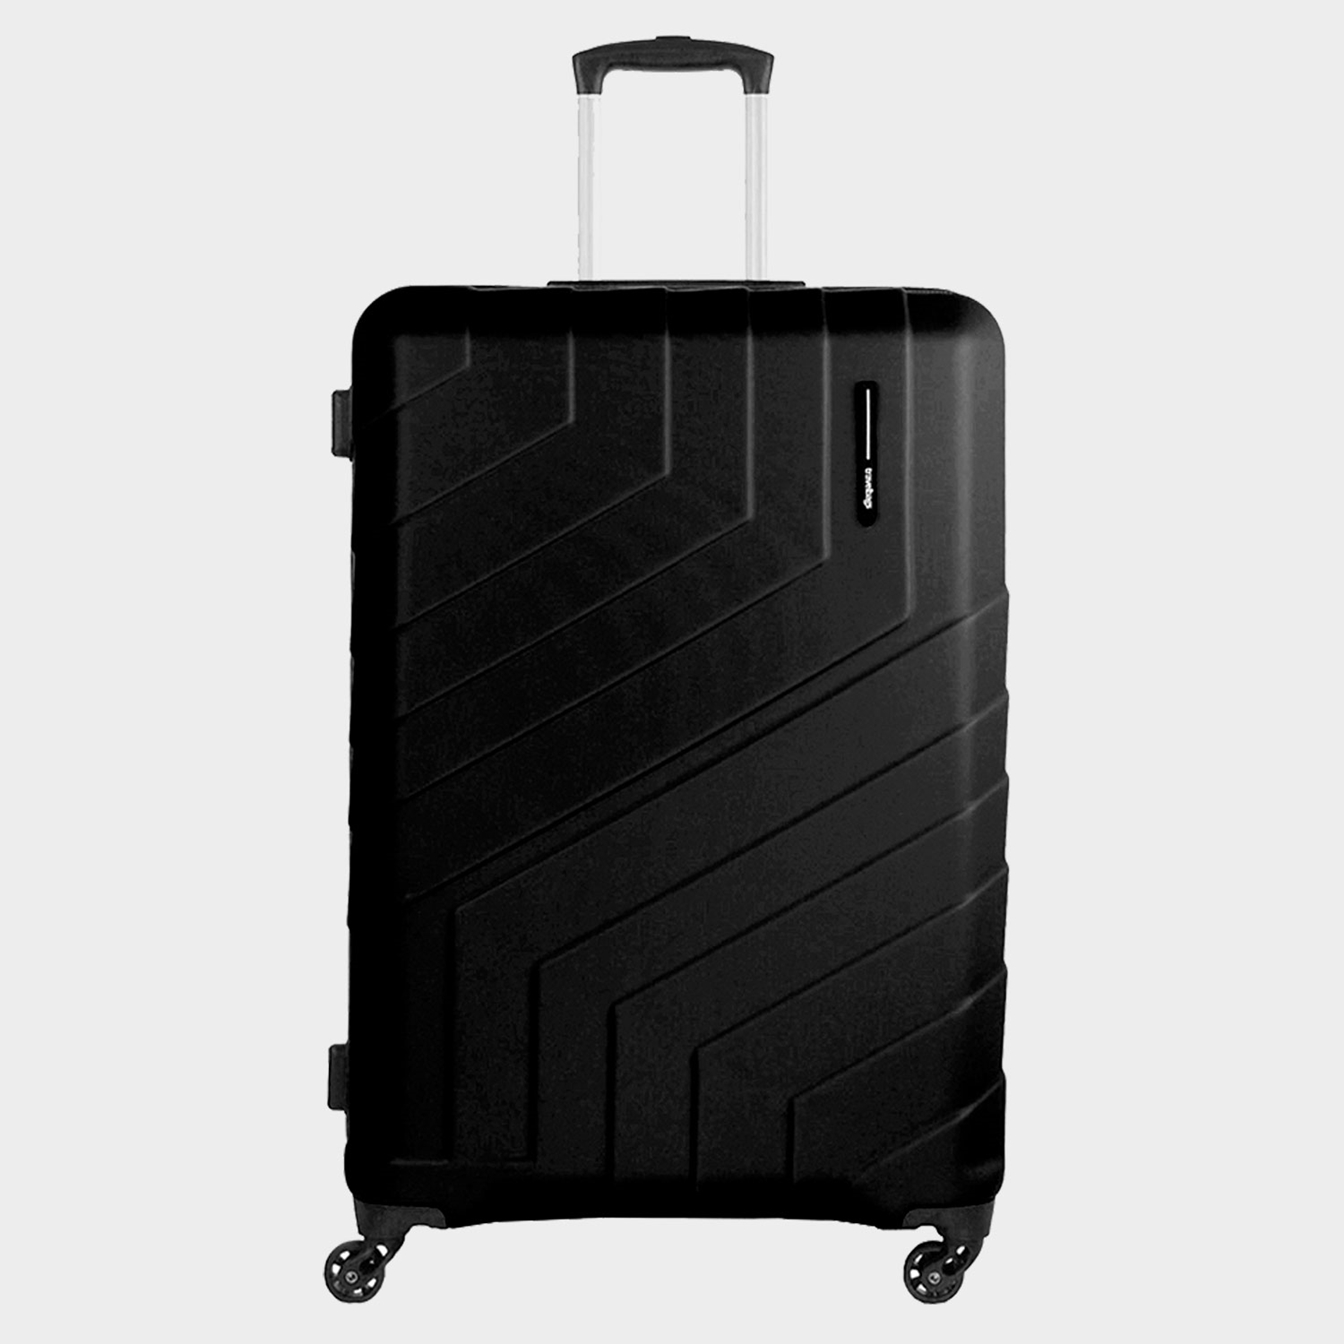 Welk formaat koffer moet ik kiezen? Het formaat koffer | Travelbags.nl